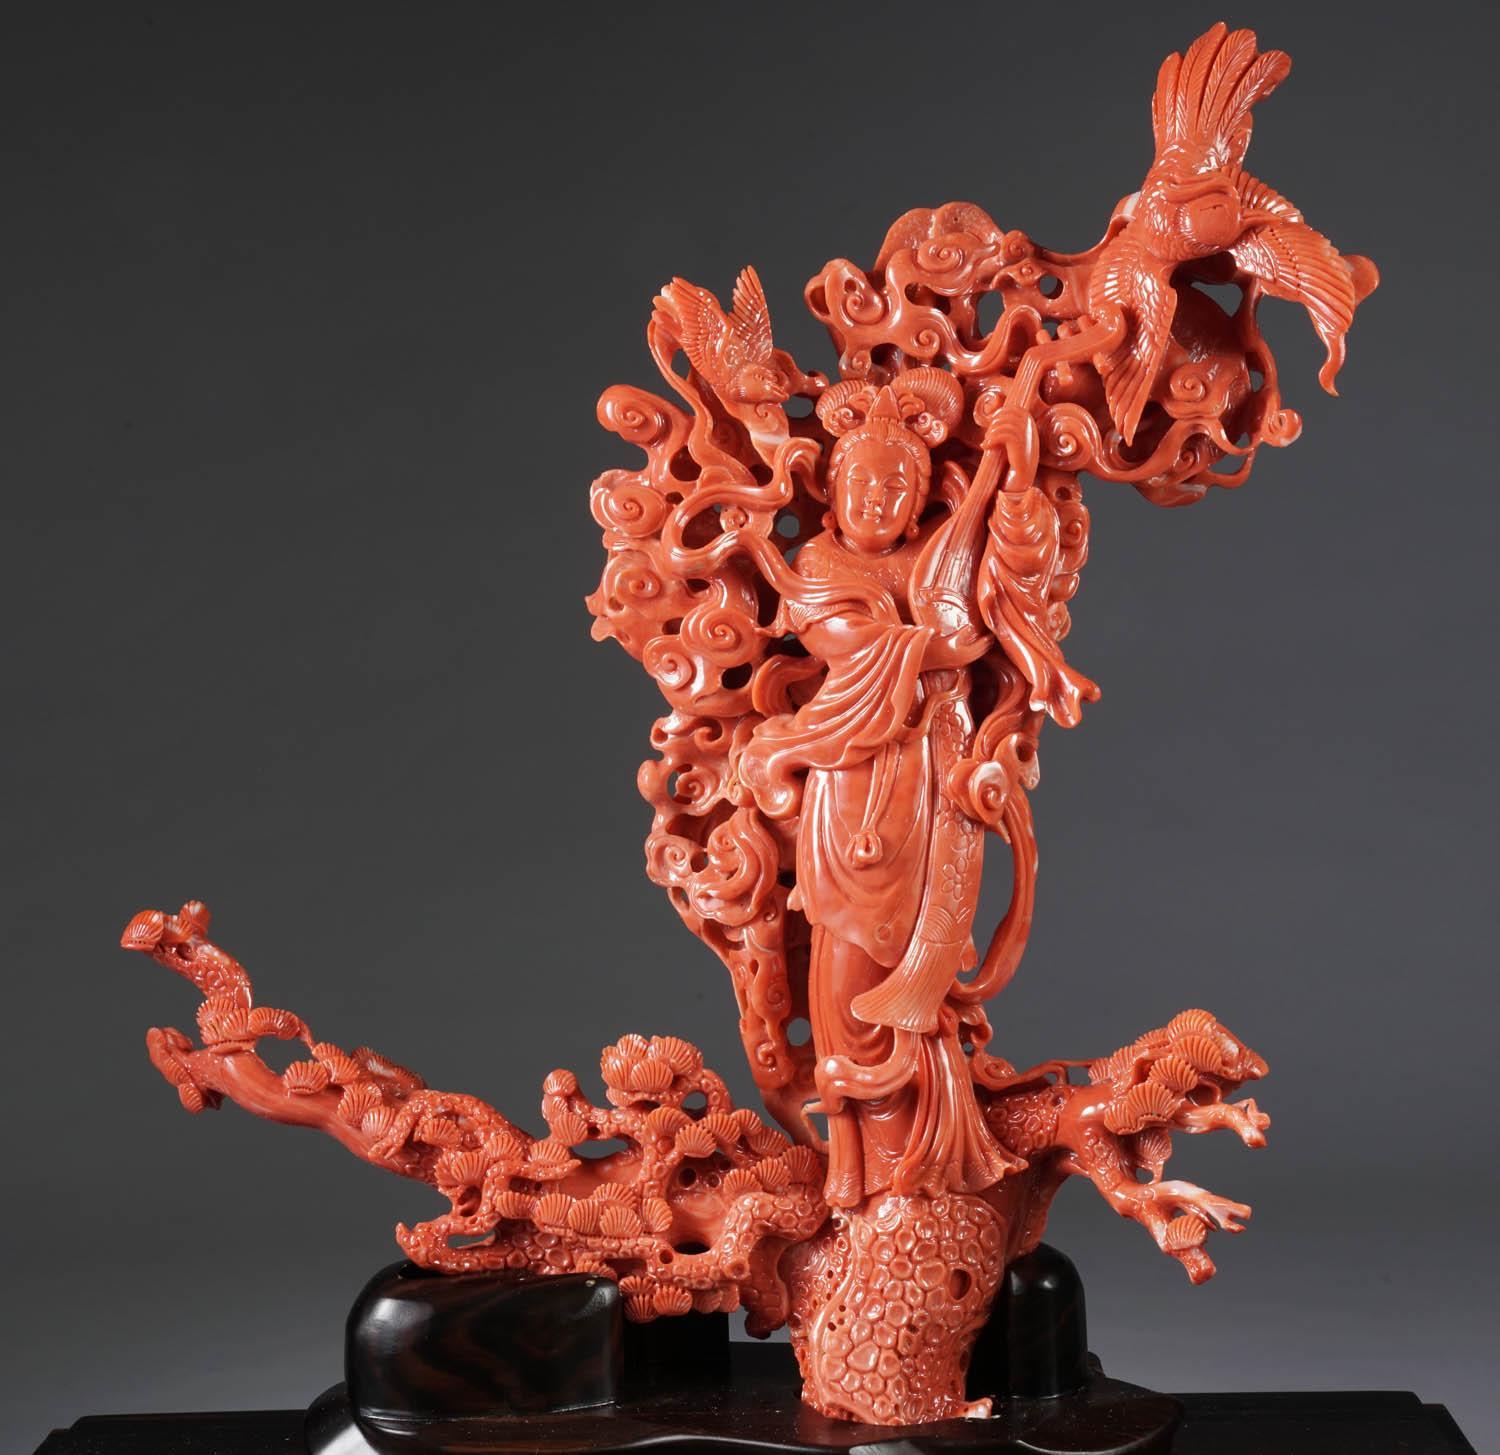 Eine außergewöhnliche chinesische geschnitzte Korallenfigurengruppe einer Guanyin, Kwan Yin mit einem Phönix.

Sehr fein geschnitzt. In einem speziell angefertigten Museumskoffer aus Glas und Holz. Die Koralle hat eine schöne, tiefrote